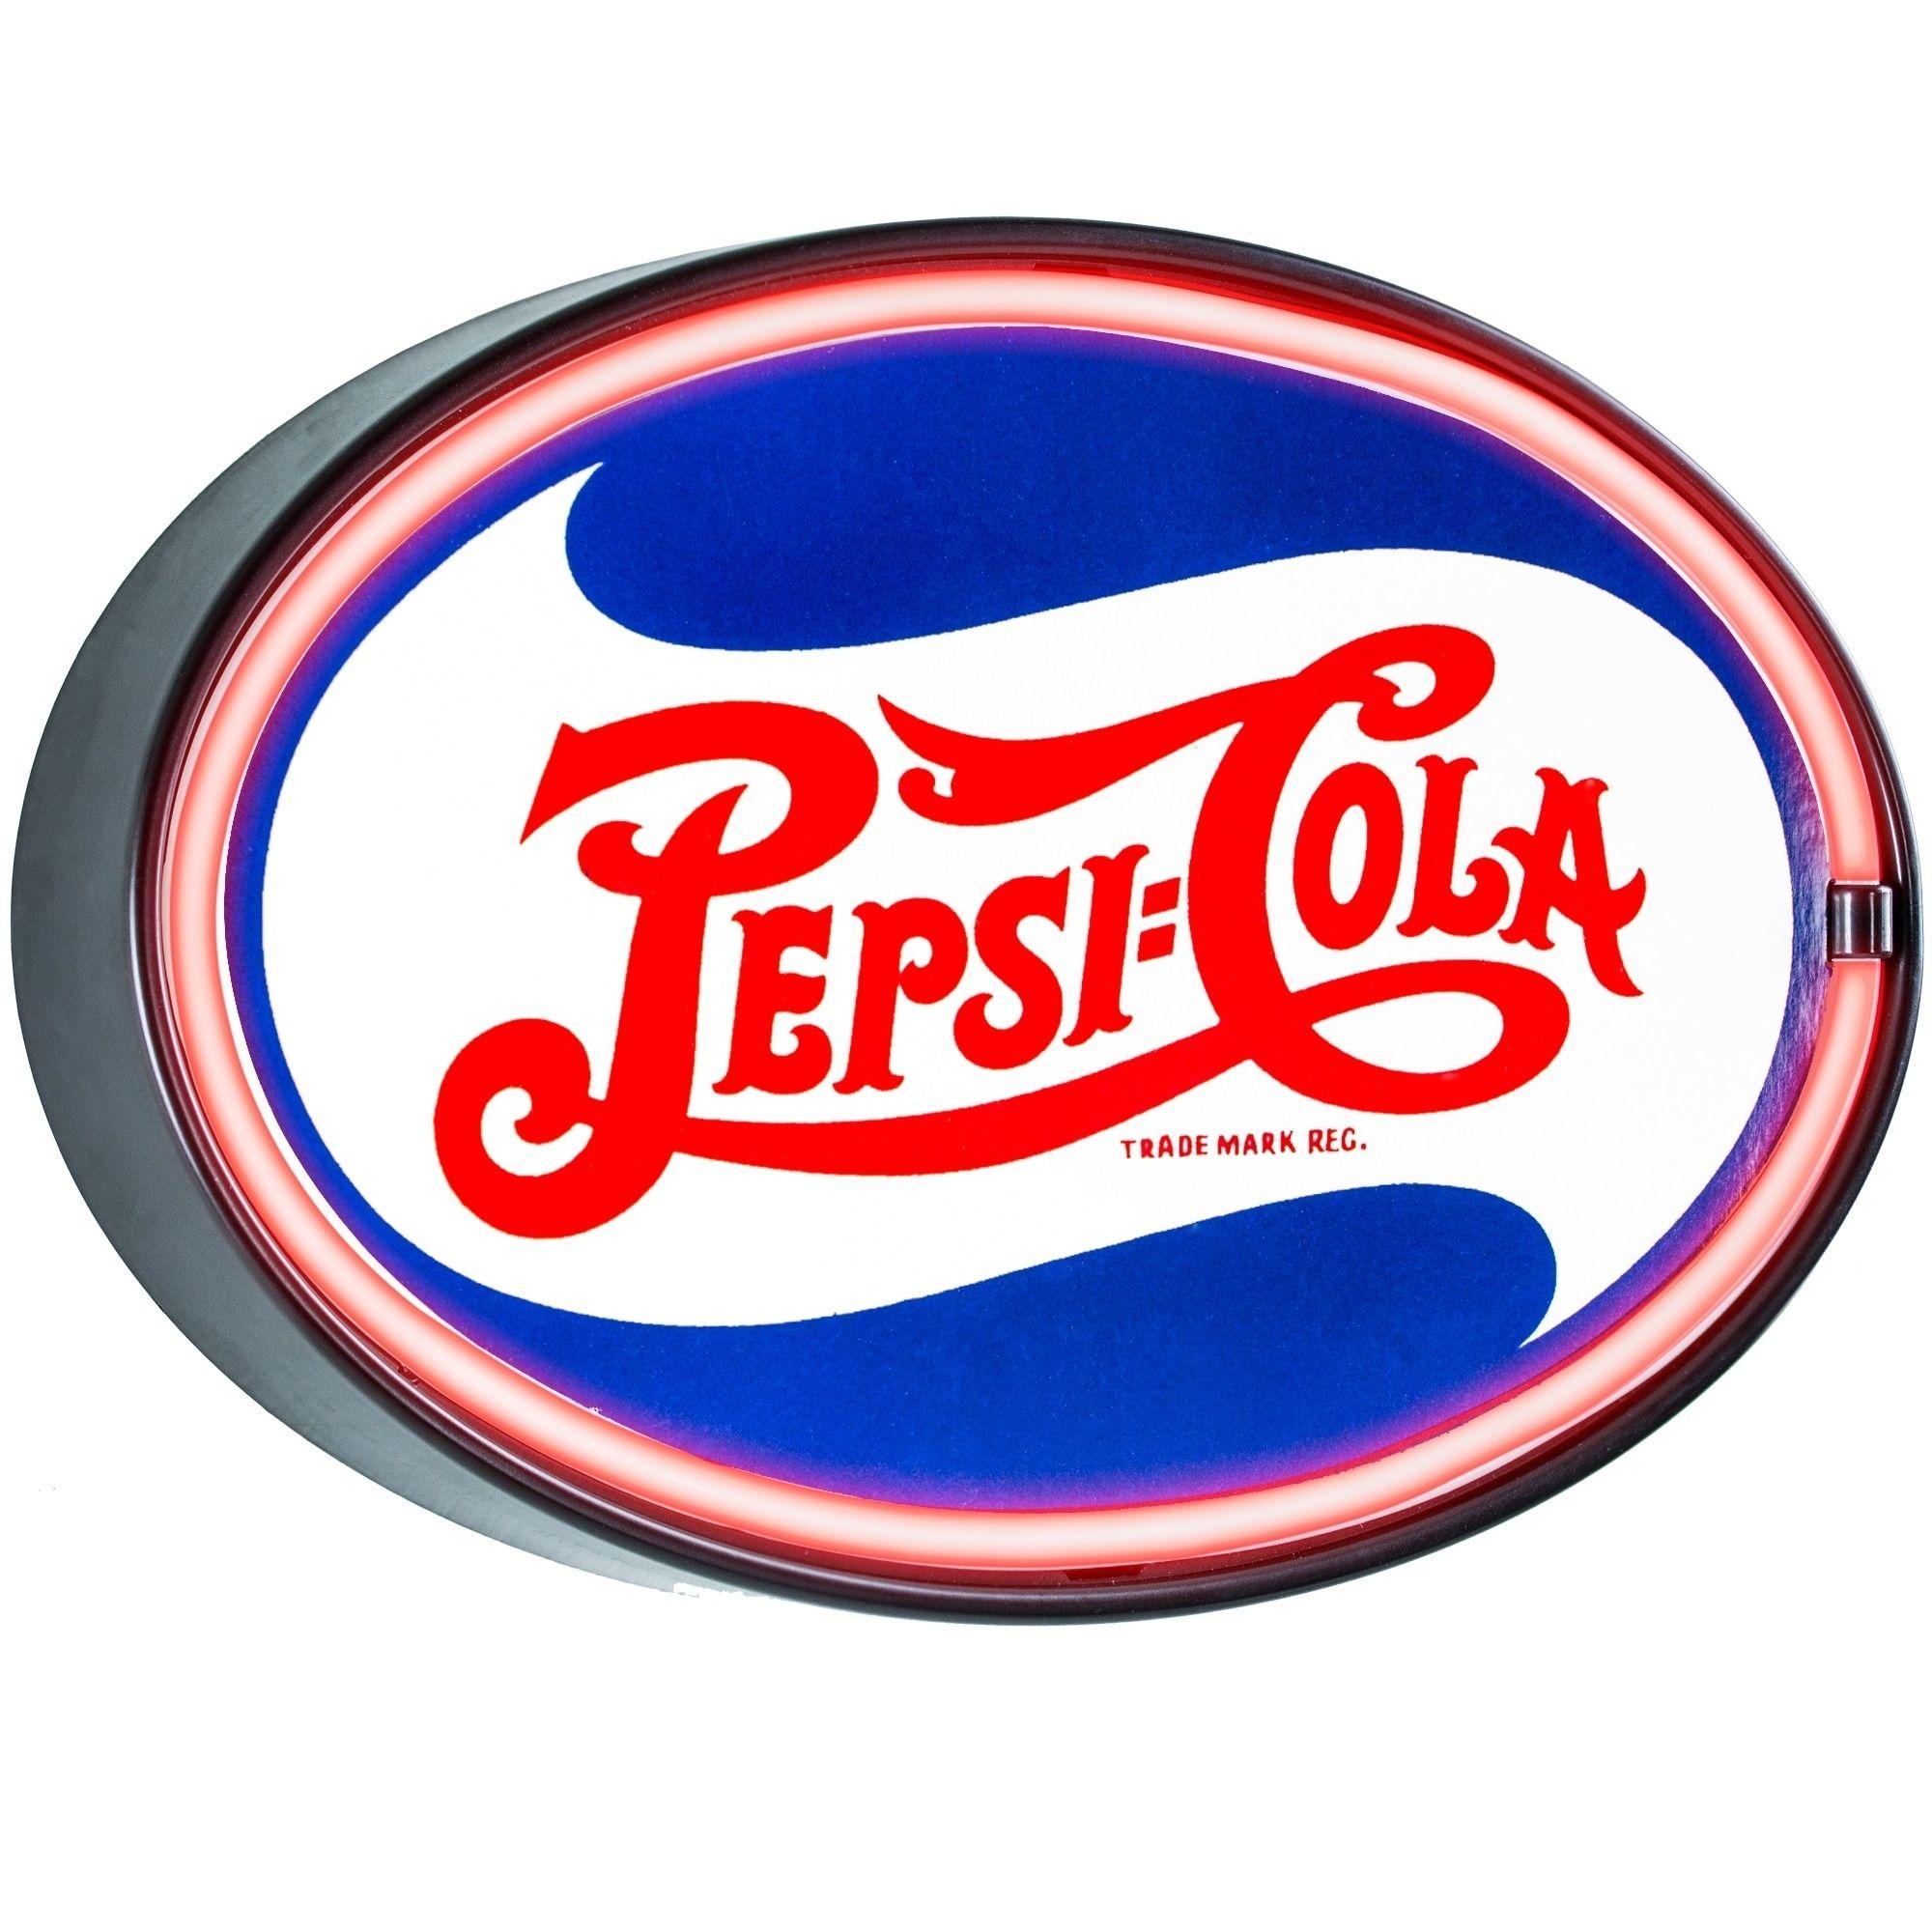 Vintage Pepsi Cola Logo - Shop Millennium Art Vintage Pepsi Cola Oval Shaped LED Light Up Sign ...